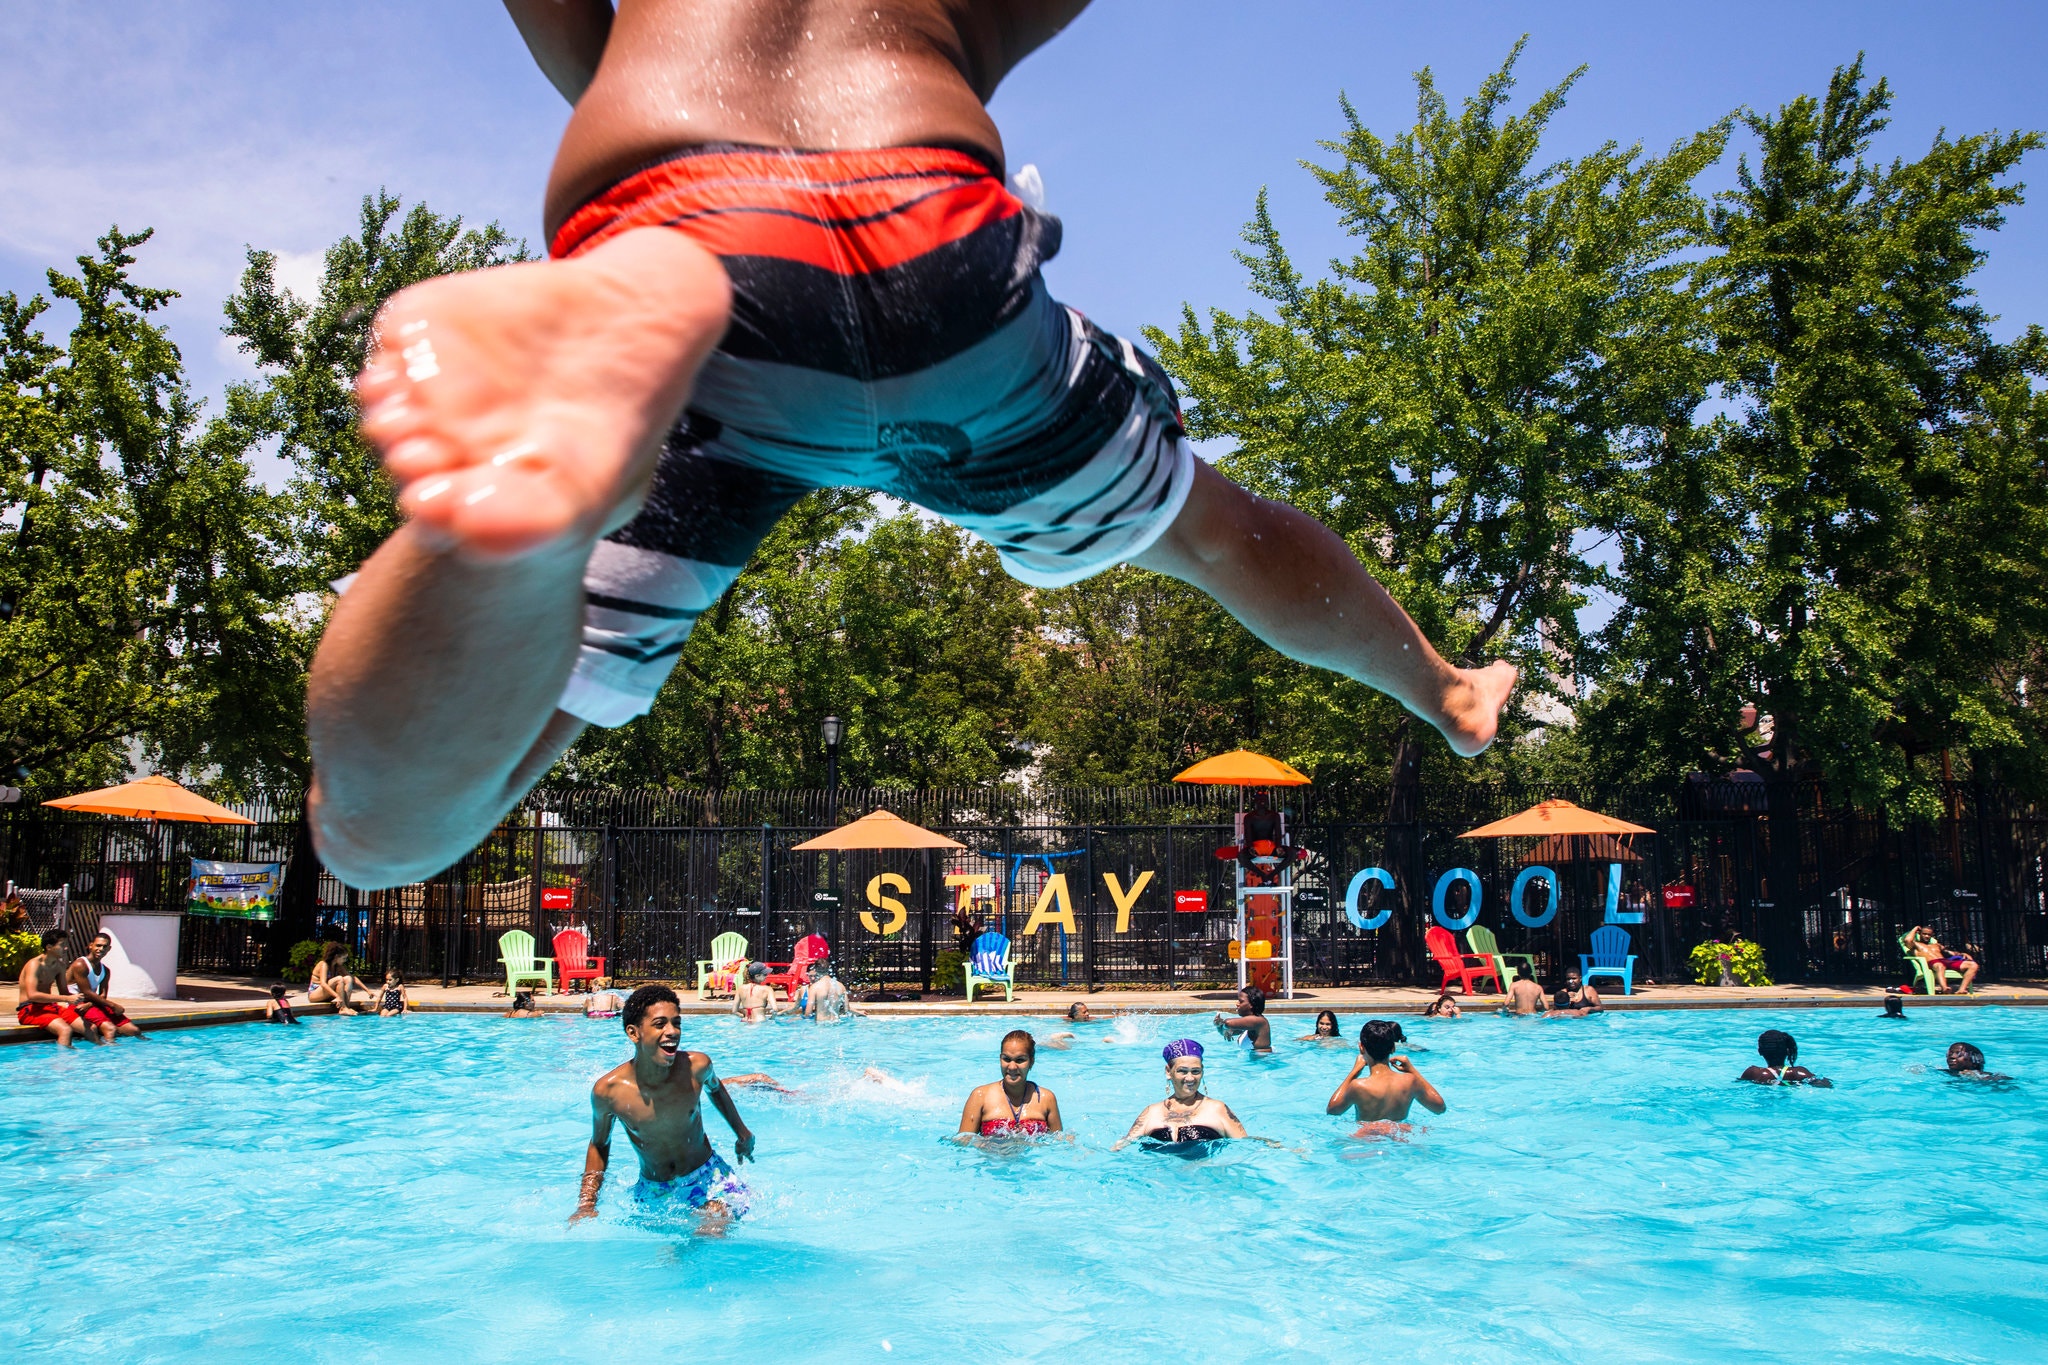 الامريكيون يلجأون لحمامات السباحة العامة هروبا من الحرارة